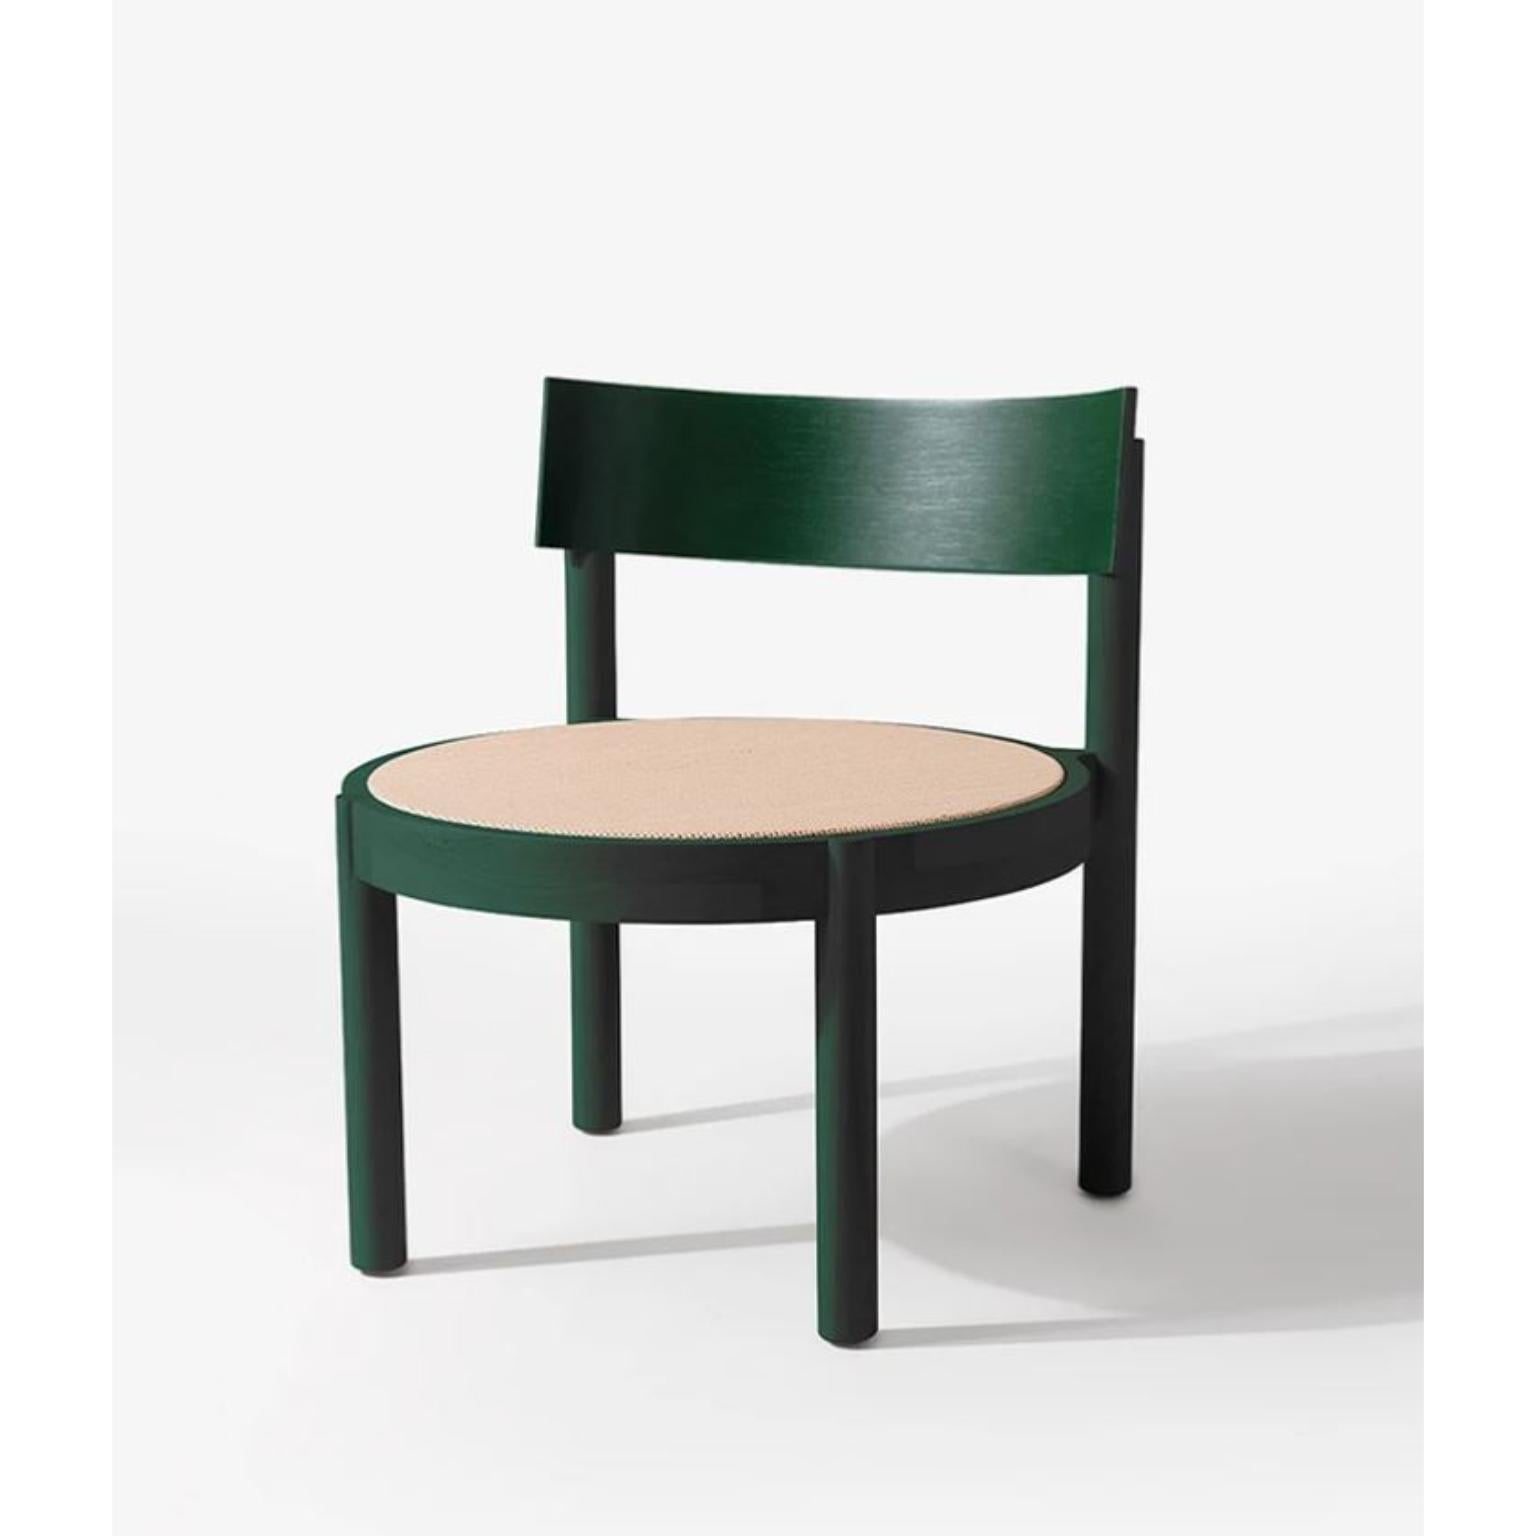 Schwarzer Gravatá Sessel von Wentz
Abmessungen: T 64 x B 60 x H 67 cm
MATERIALIEN: Tauari-Holz, Rohr/Polsterung.
Gewicht: 6,6kg / 14,5 lbs

Die Gravatá-Serie ist eine Synthese unserer Vision von funktionaler und visueller Einfachheit der Möbel. Mit